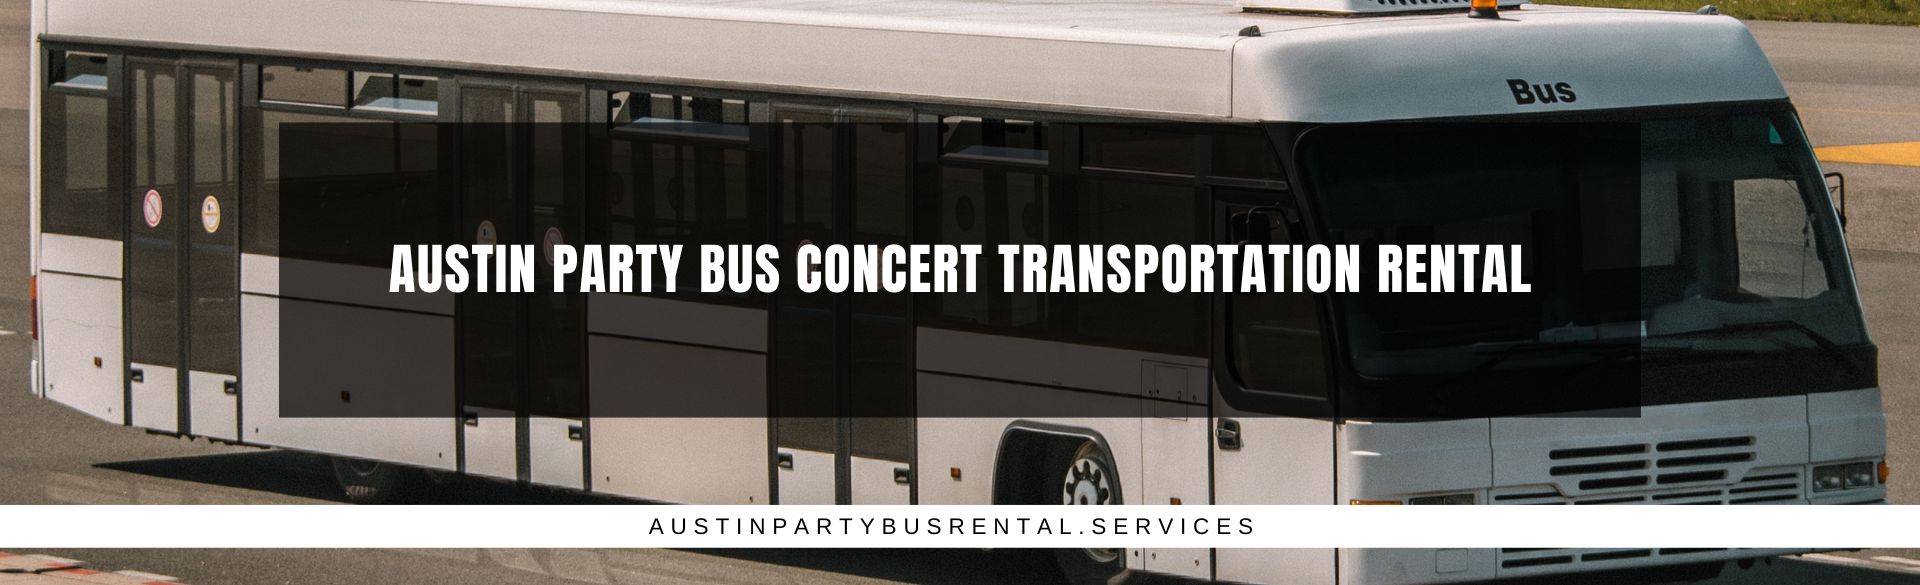 Austin Party Bus Concert Transportation Rental